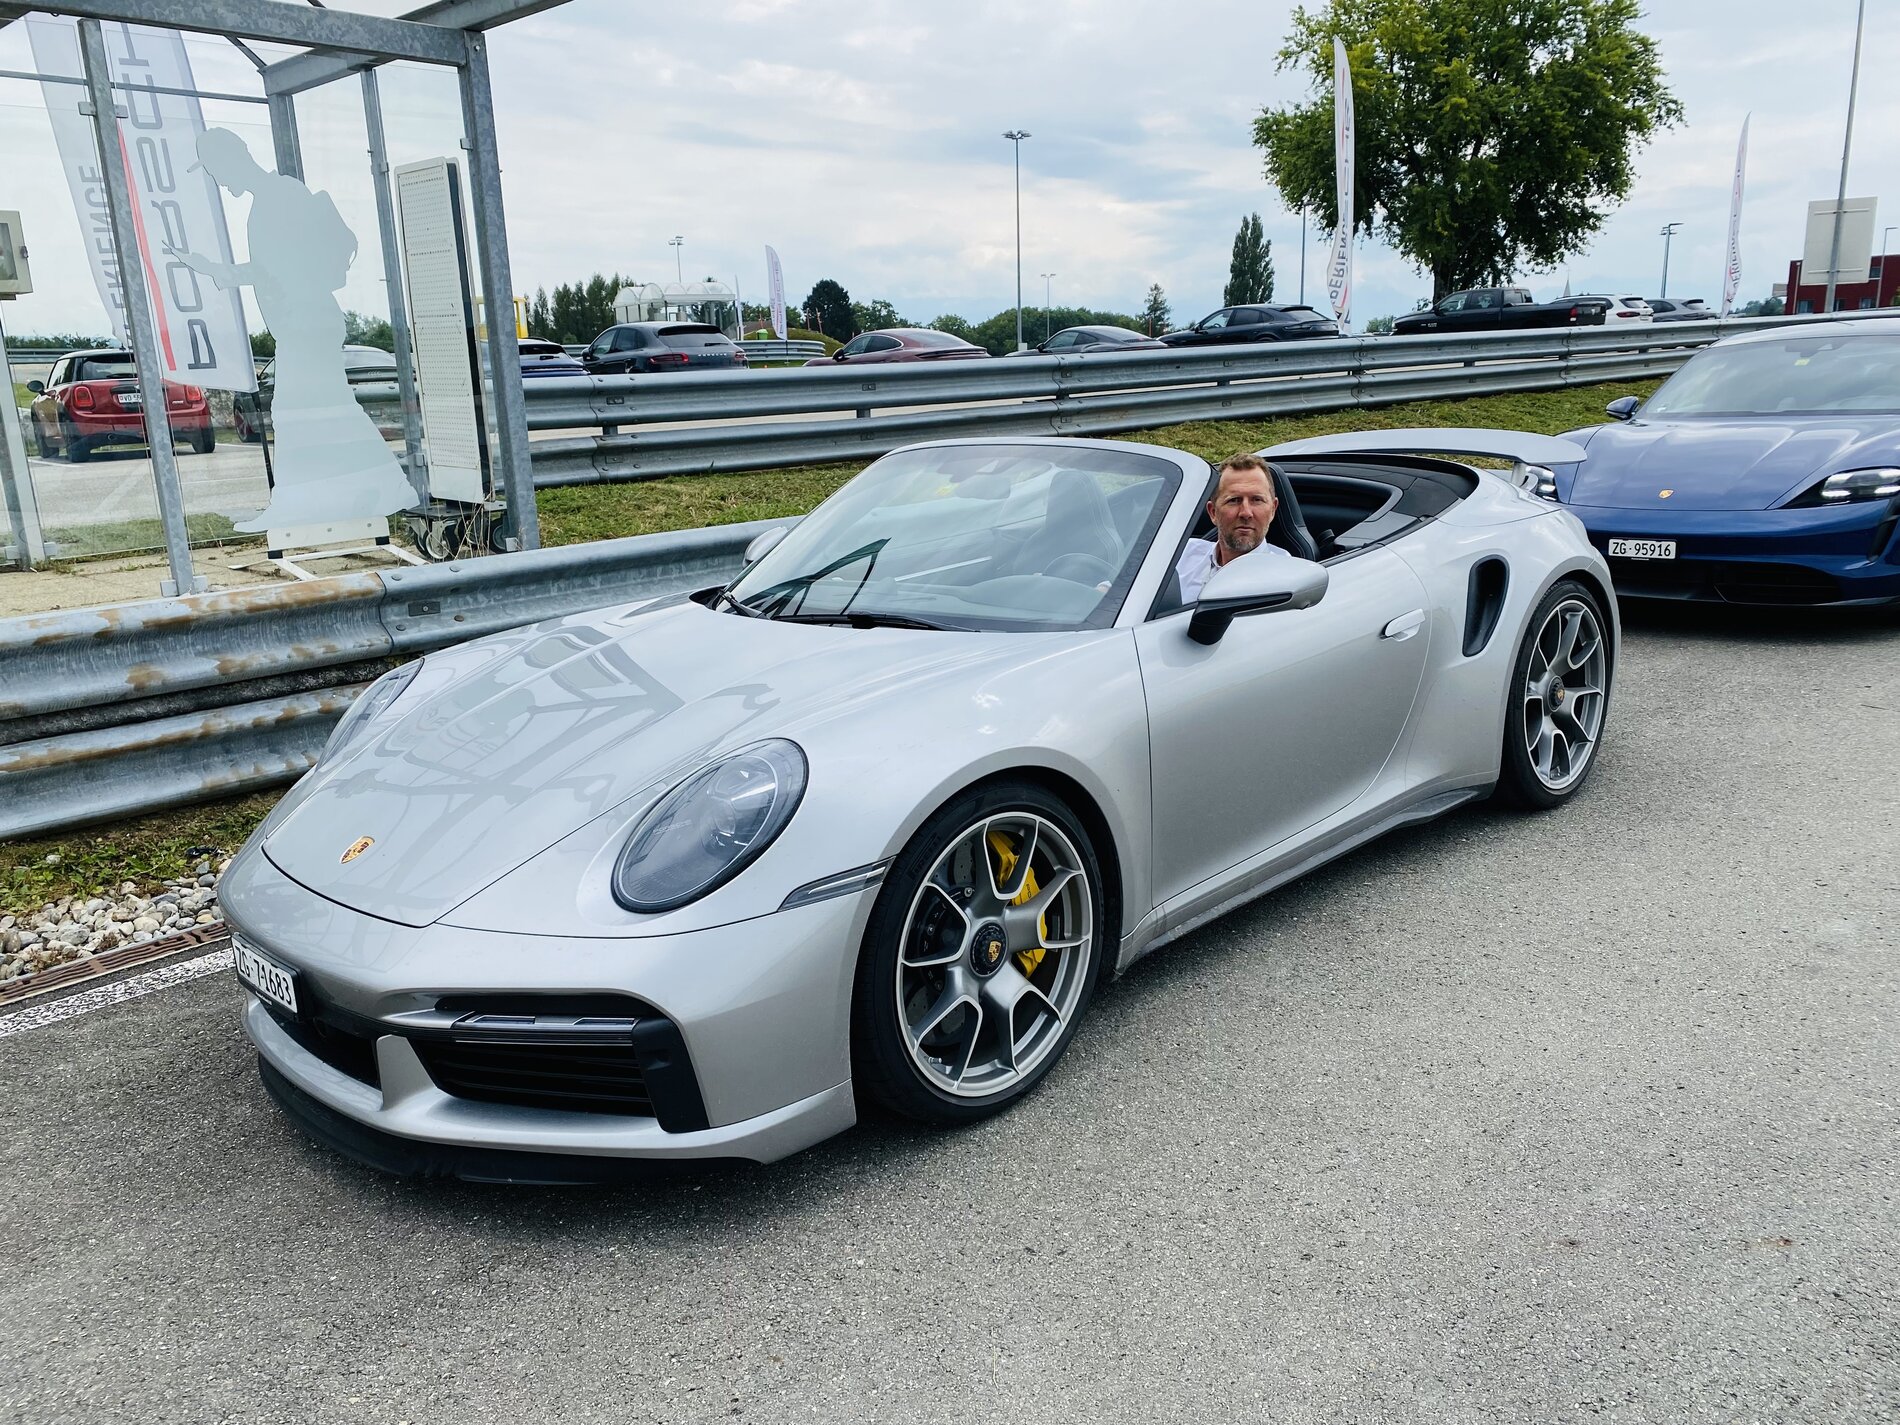 Porsche Taycan Porsche Experience Day - videos & pics 2D89F8AA-9987-4924-9021-13A0438CD725